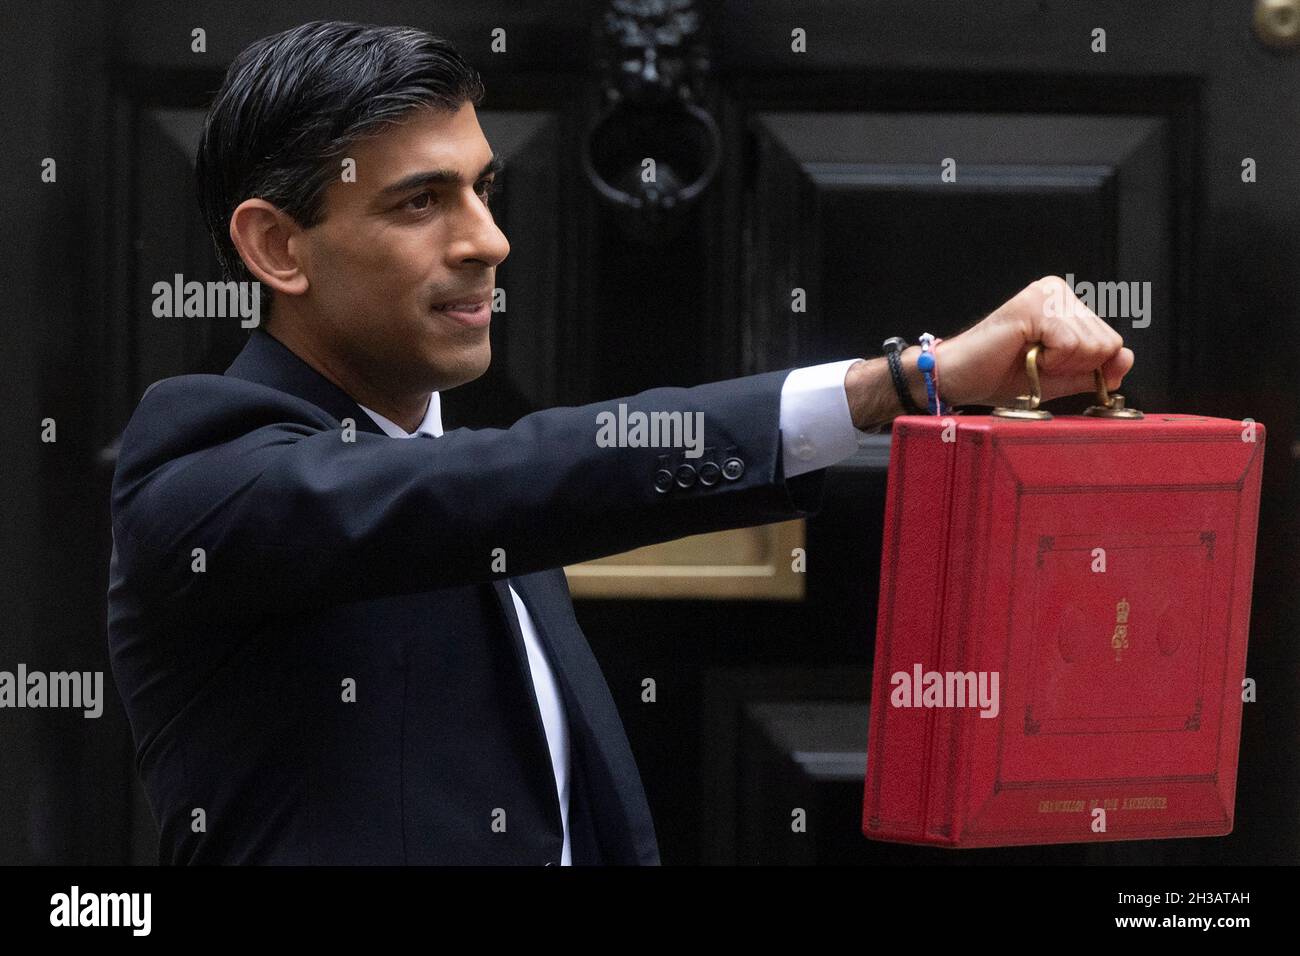 27/10/2021. London, Großbritannien. Der Schatzkanzler Rishi Sunak hält den roten Versandkarton für die Medien, bevor er die Downing Street Nr. 11 verlässt, um den Haushalt im Unterhaus vorzustellen. Stockfoto